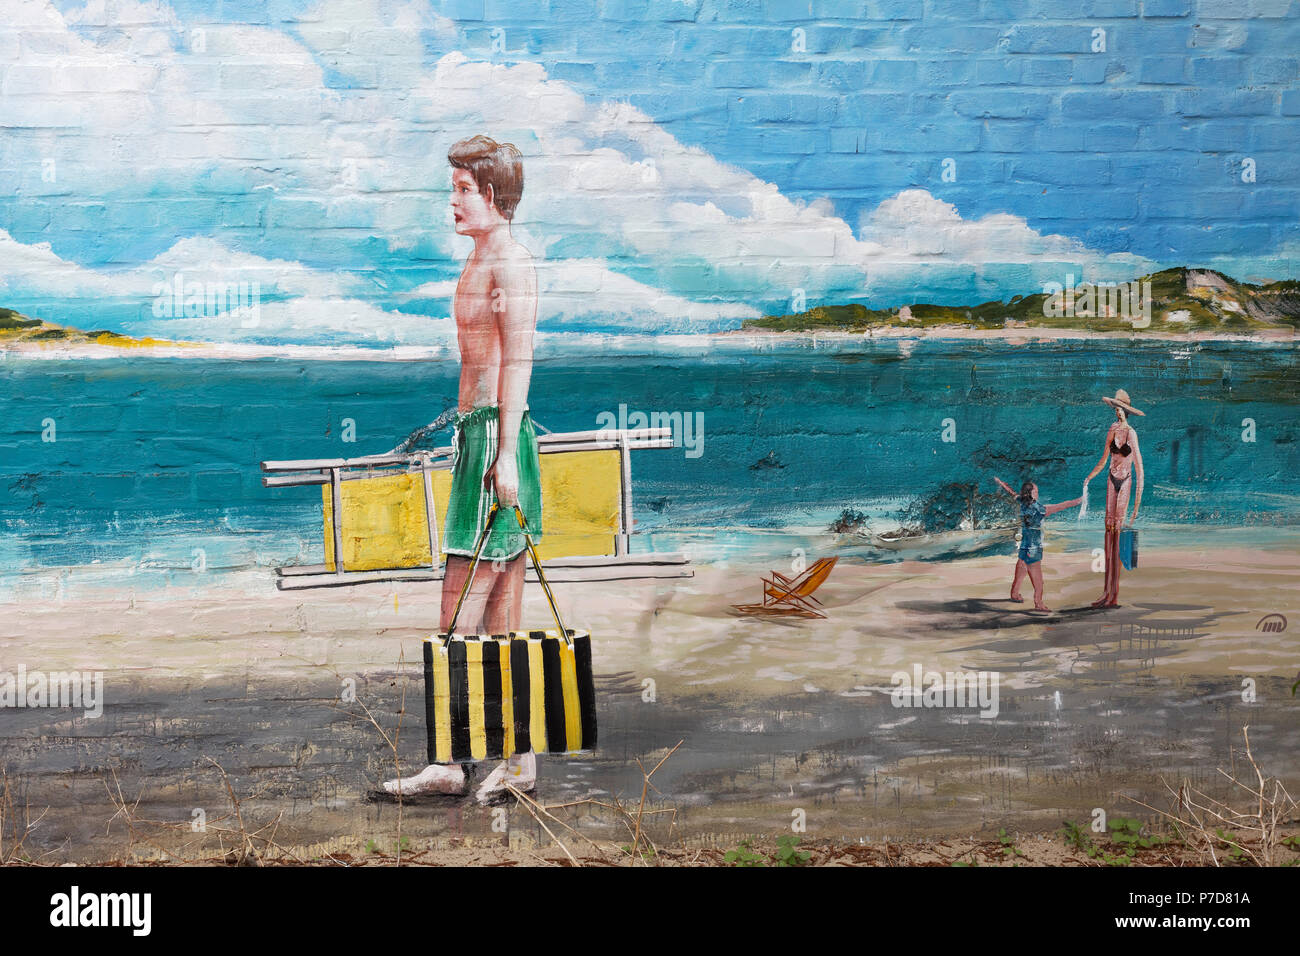 Hombre en natación enlaces ir a la playa, de trompe l'oeil de pintura mural por Gregor Wosik y Danila, Streetart Shumelev Foto de stock